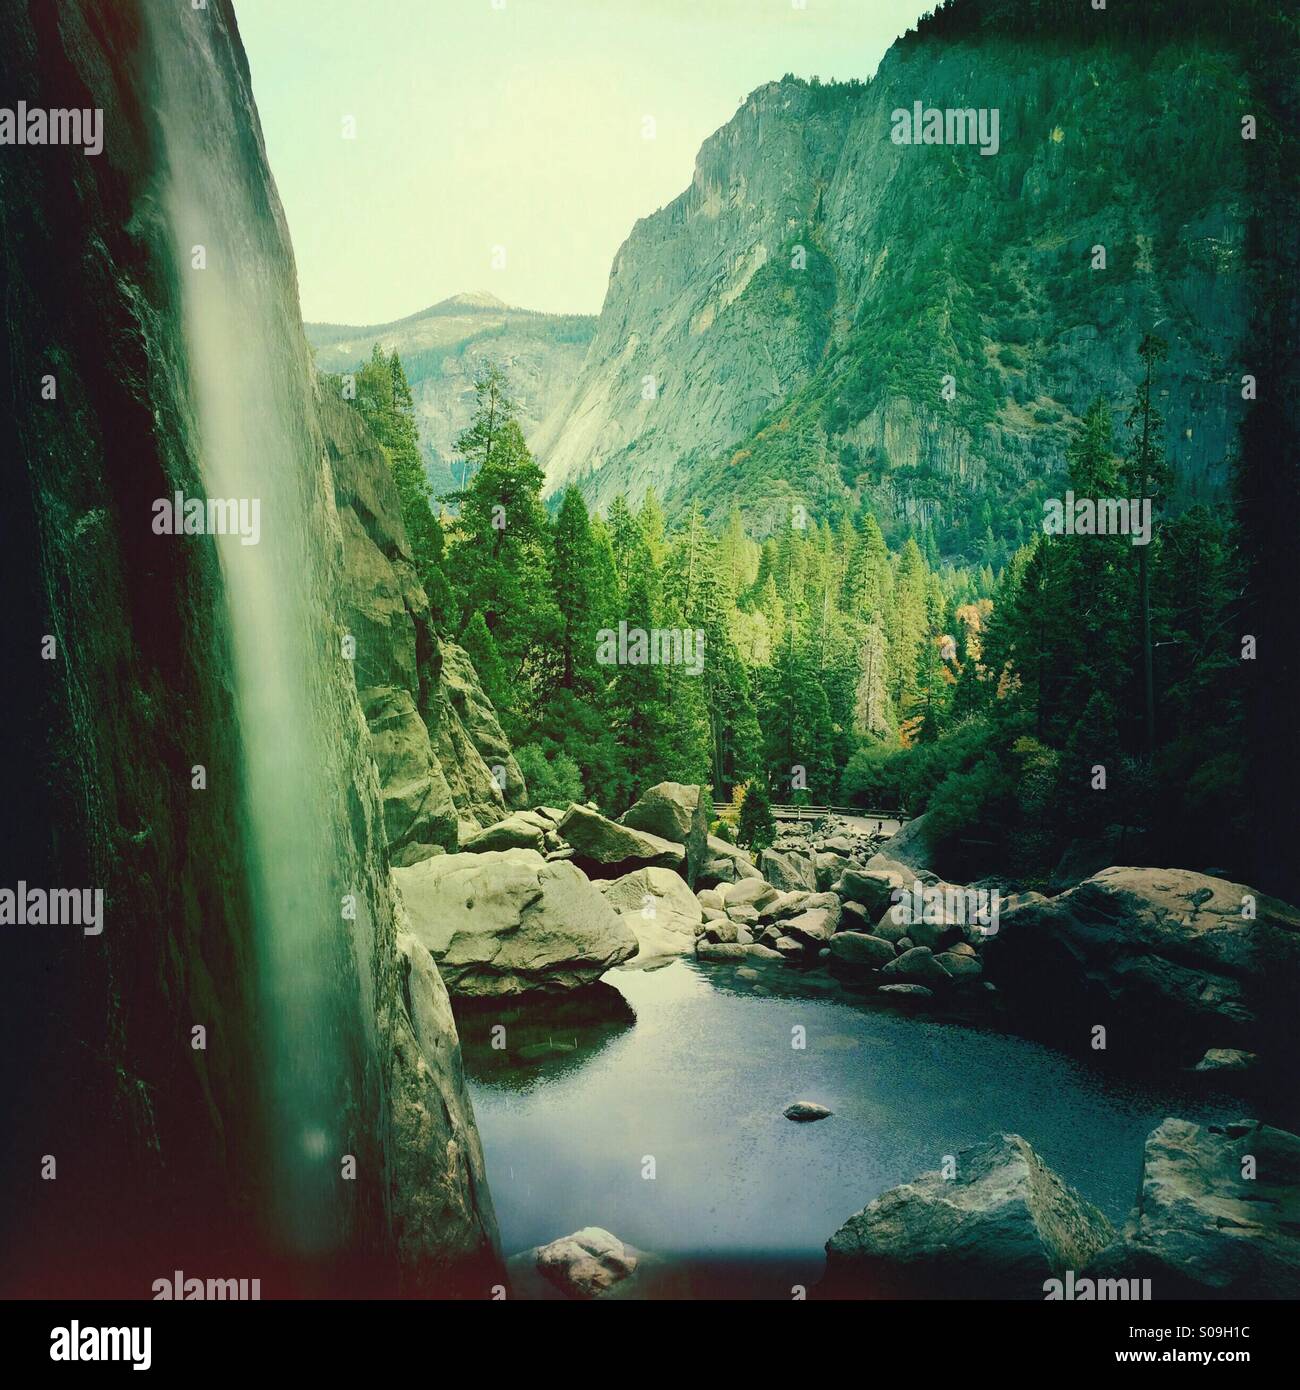 Avis de Yosémite Creek et la base de la baisse des chutes de Yosemite avec faible débit d'eau au cours de l'automne. La vallée Yosemite, Yosemite National Park, Mariposa County, Californie, USA Banque D'Images